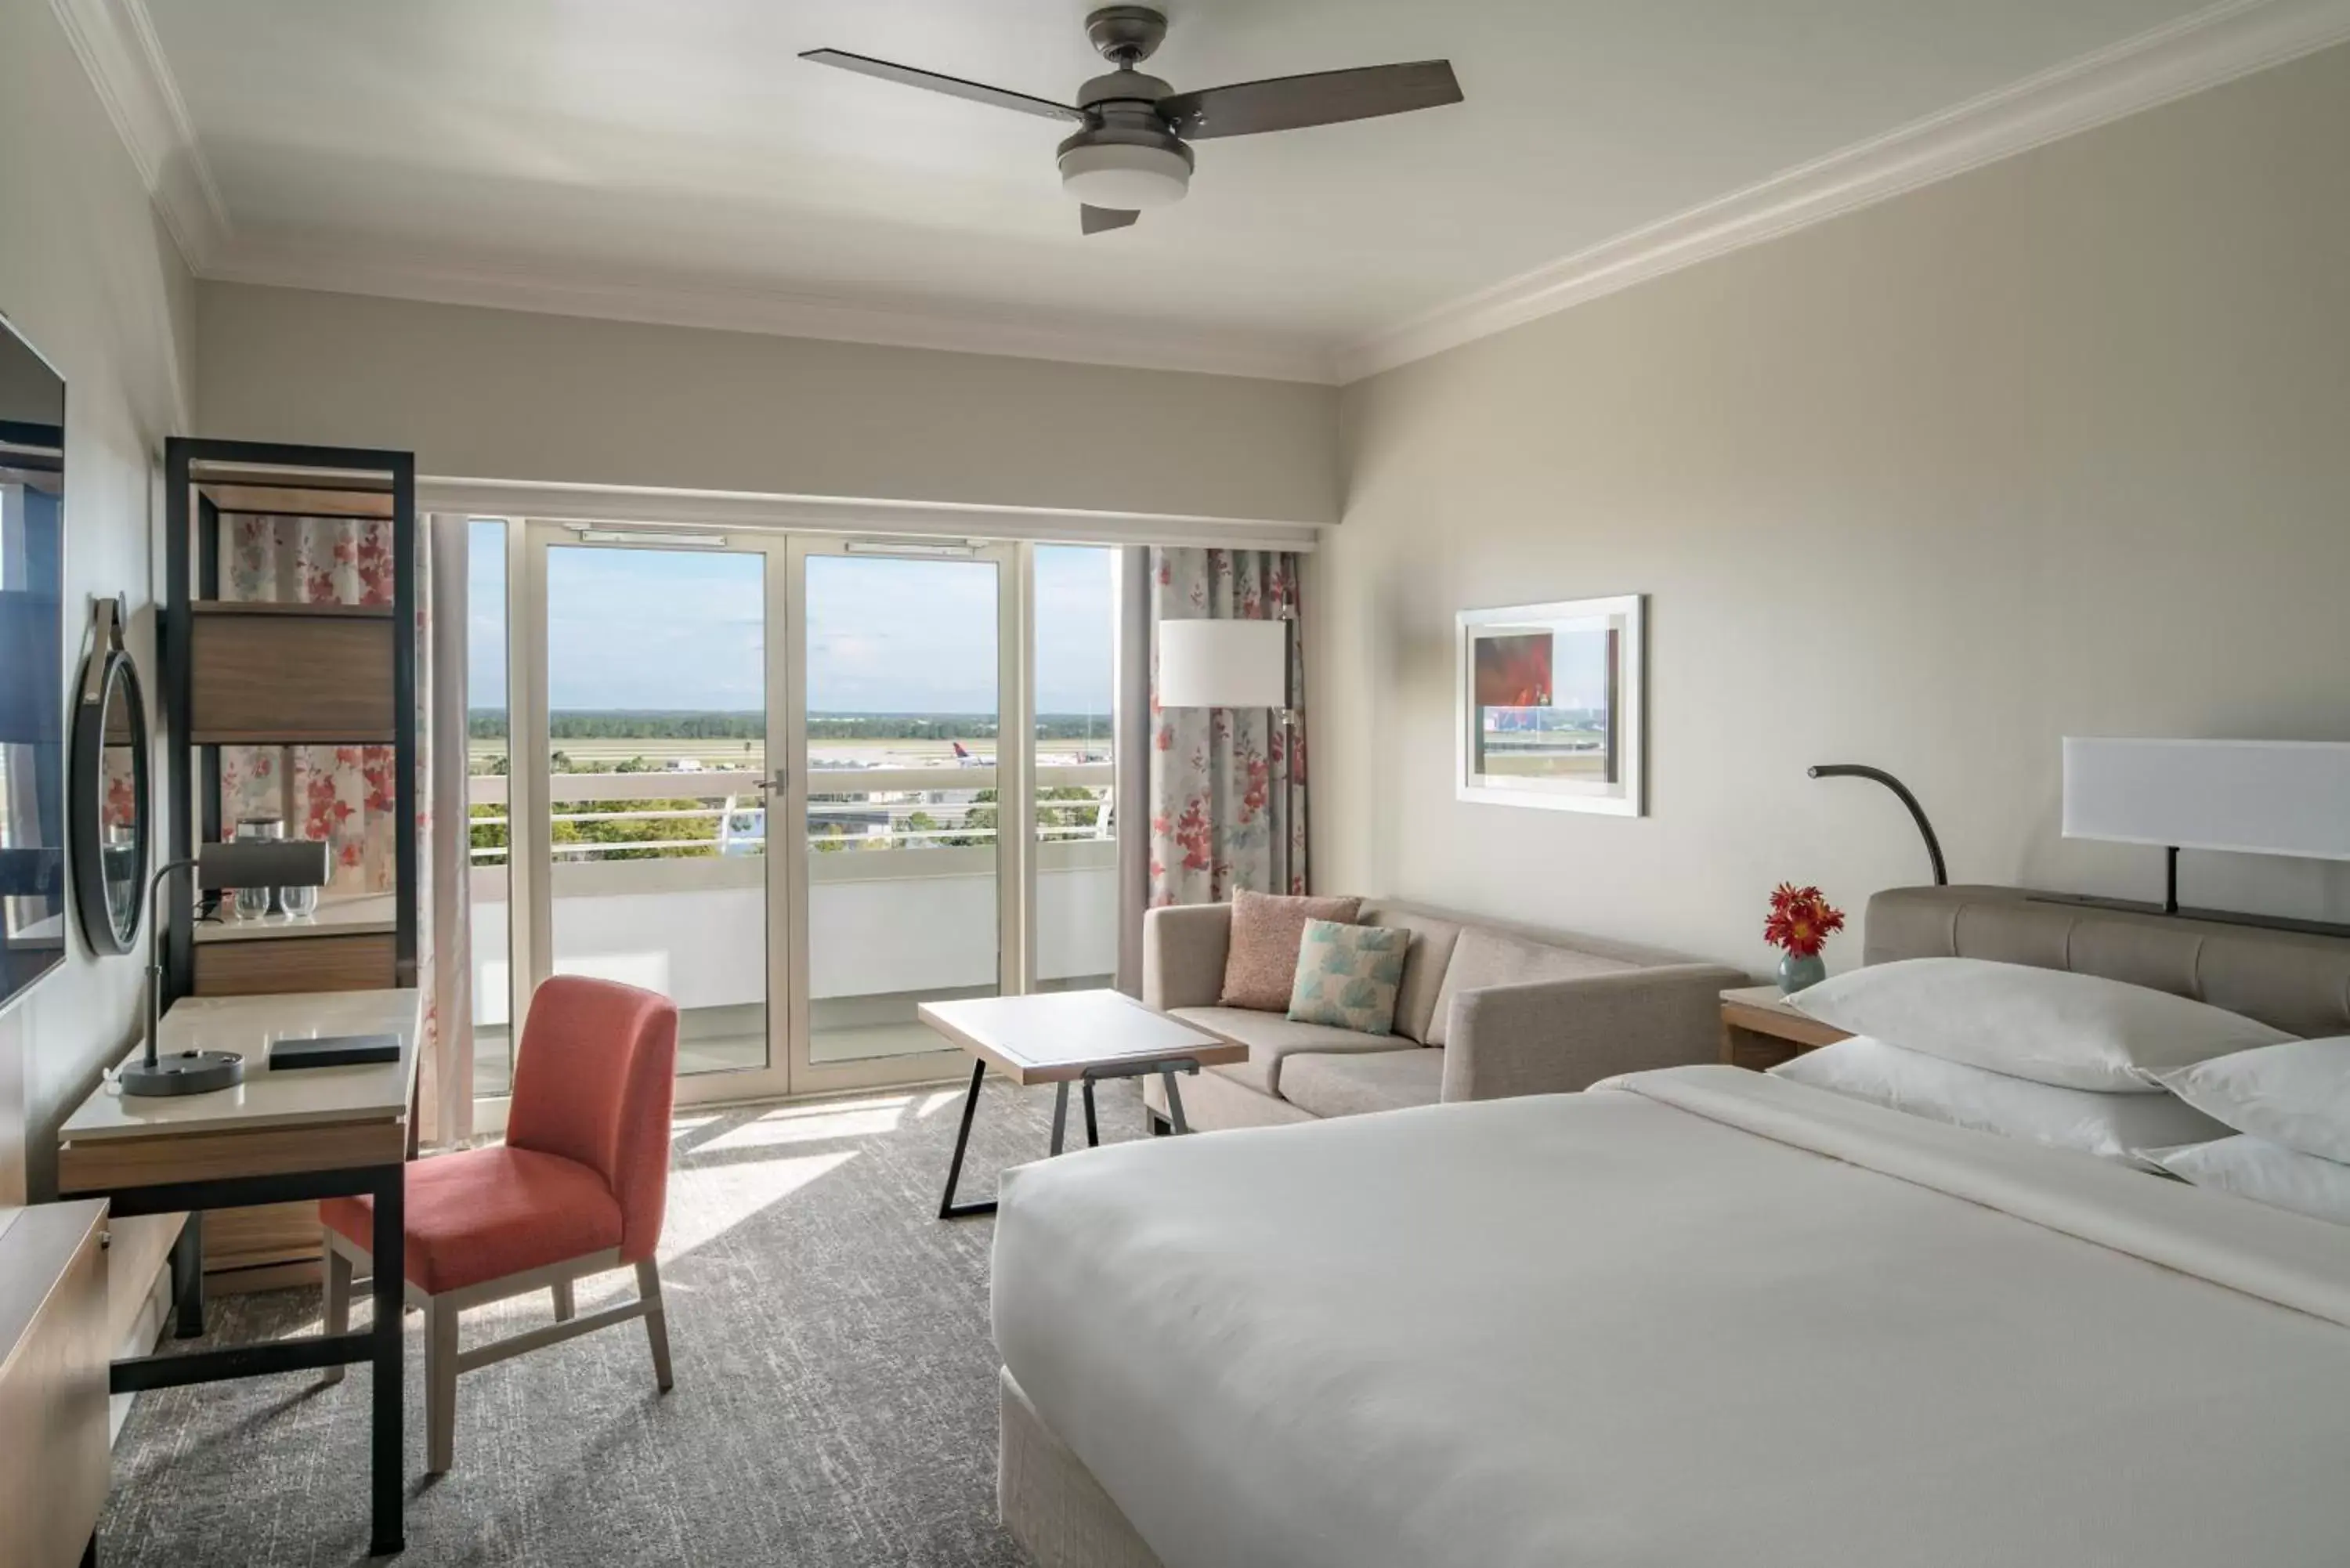 King Room with Runway View in Hyatt Regency Orlando International Airport Hotel